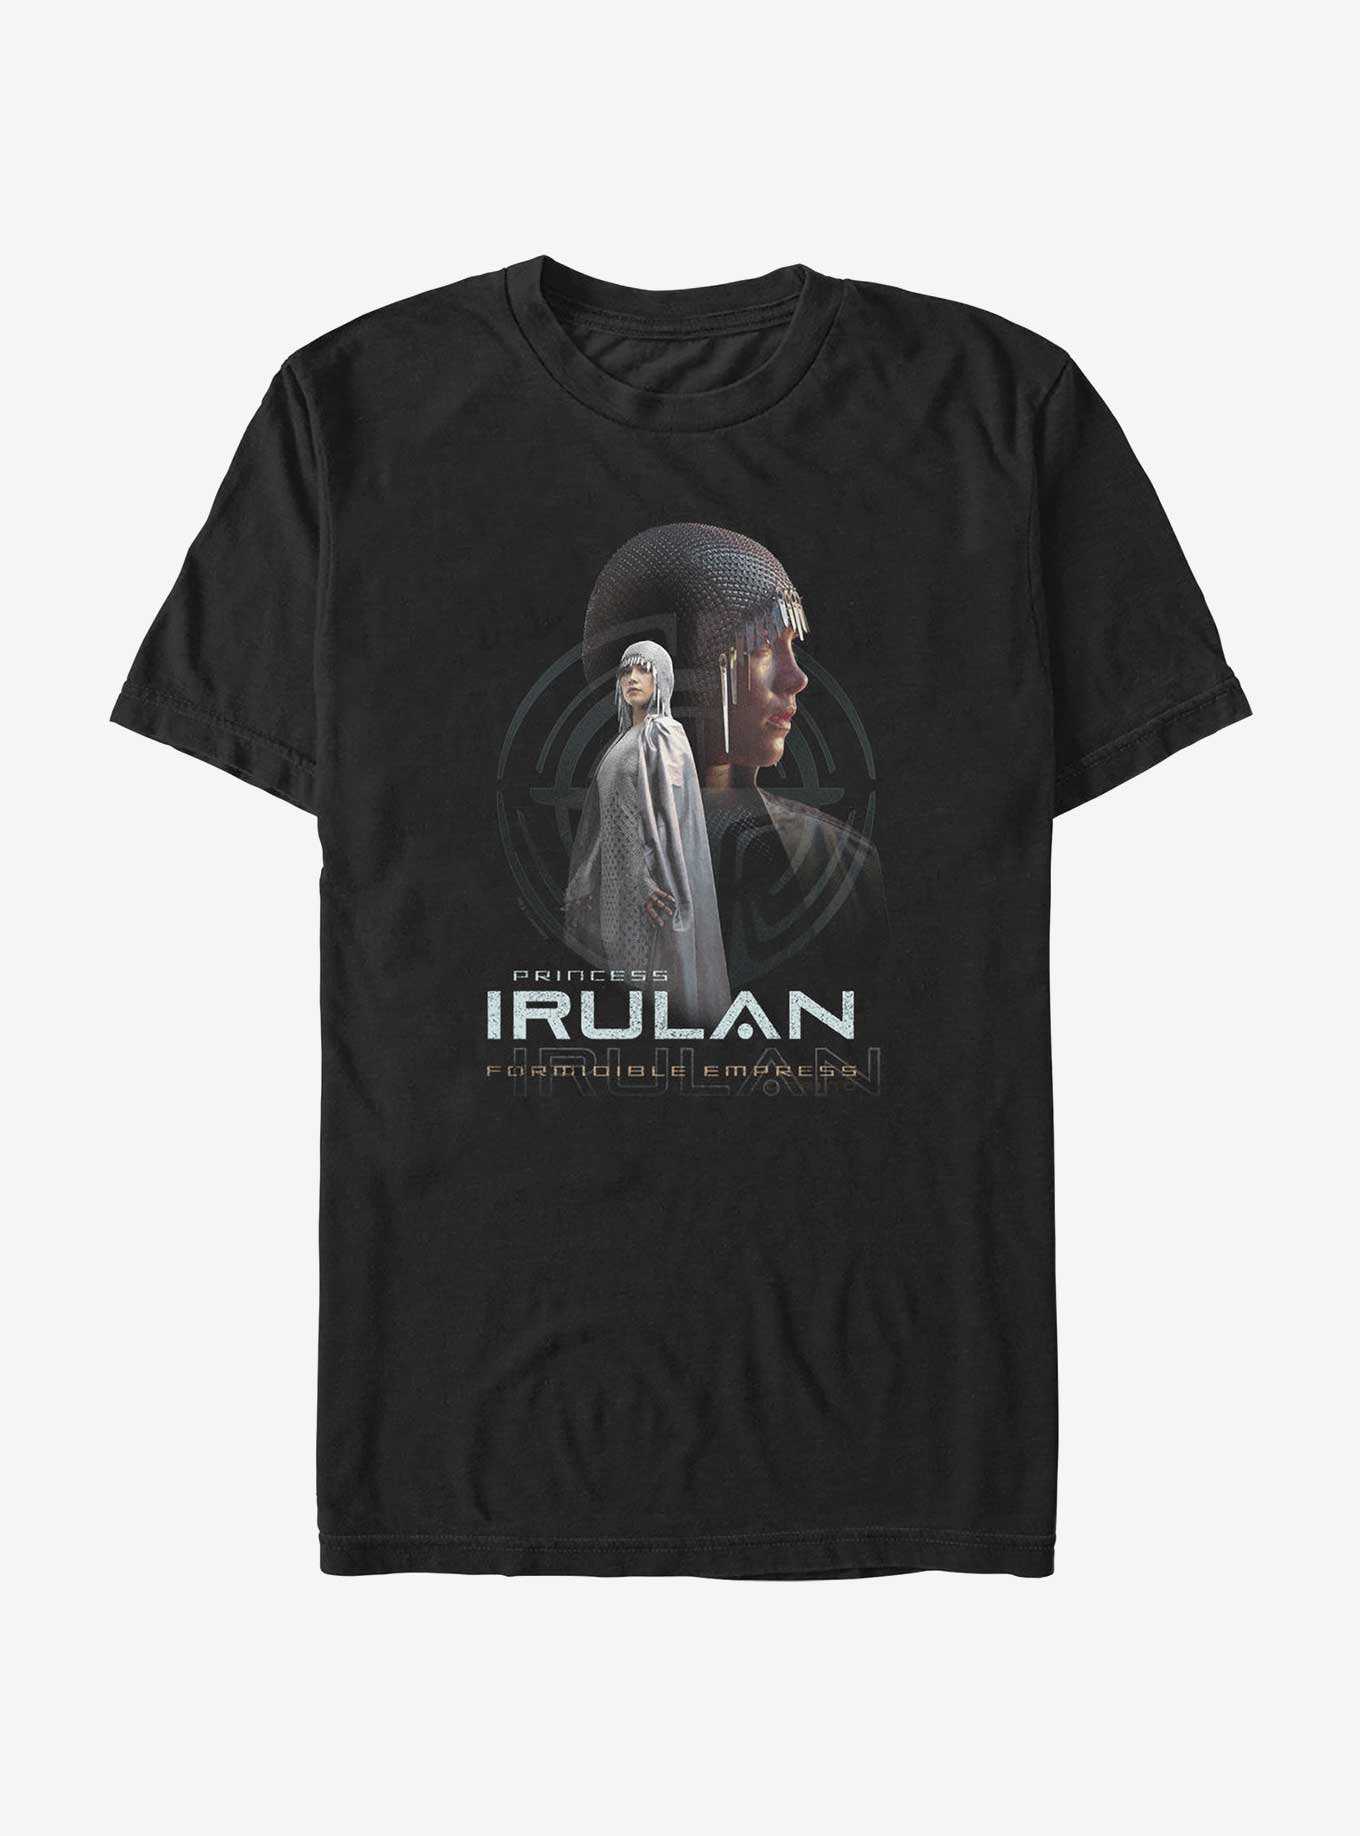 Dune: Part Two Irulan Princess Character T-Shirt, , hi-res